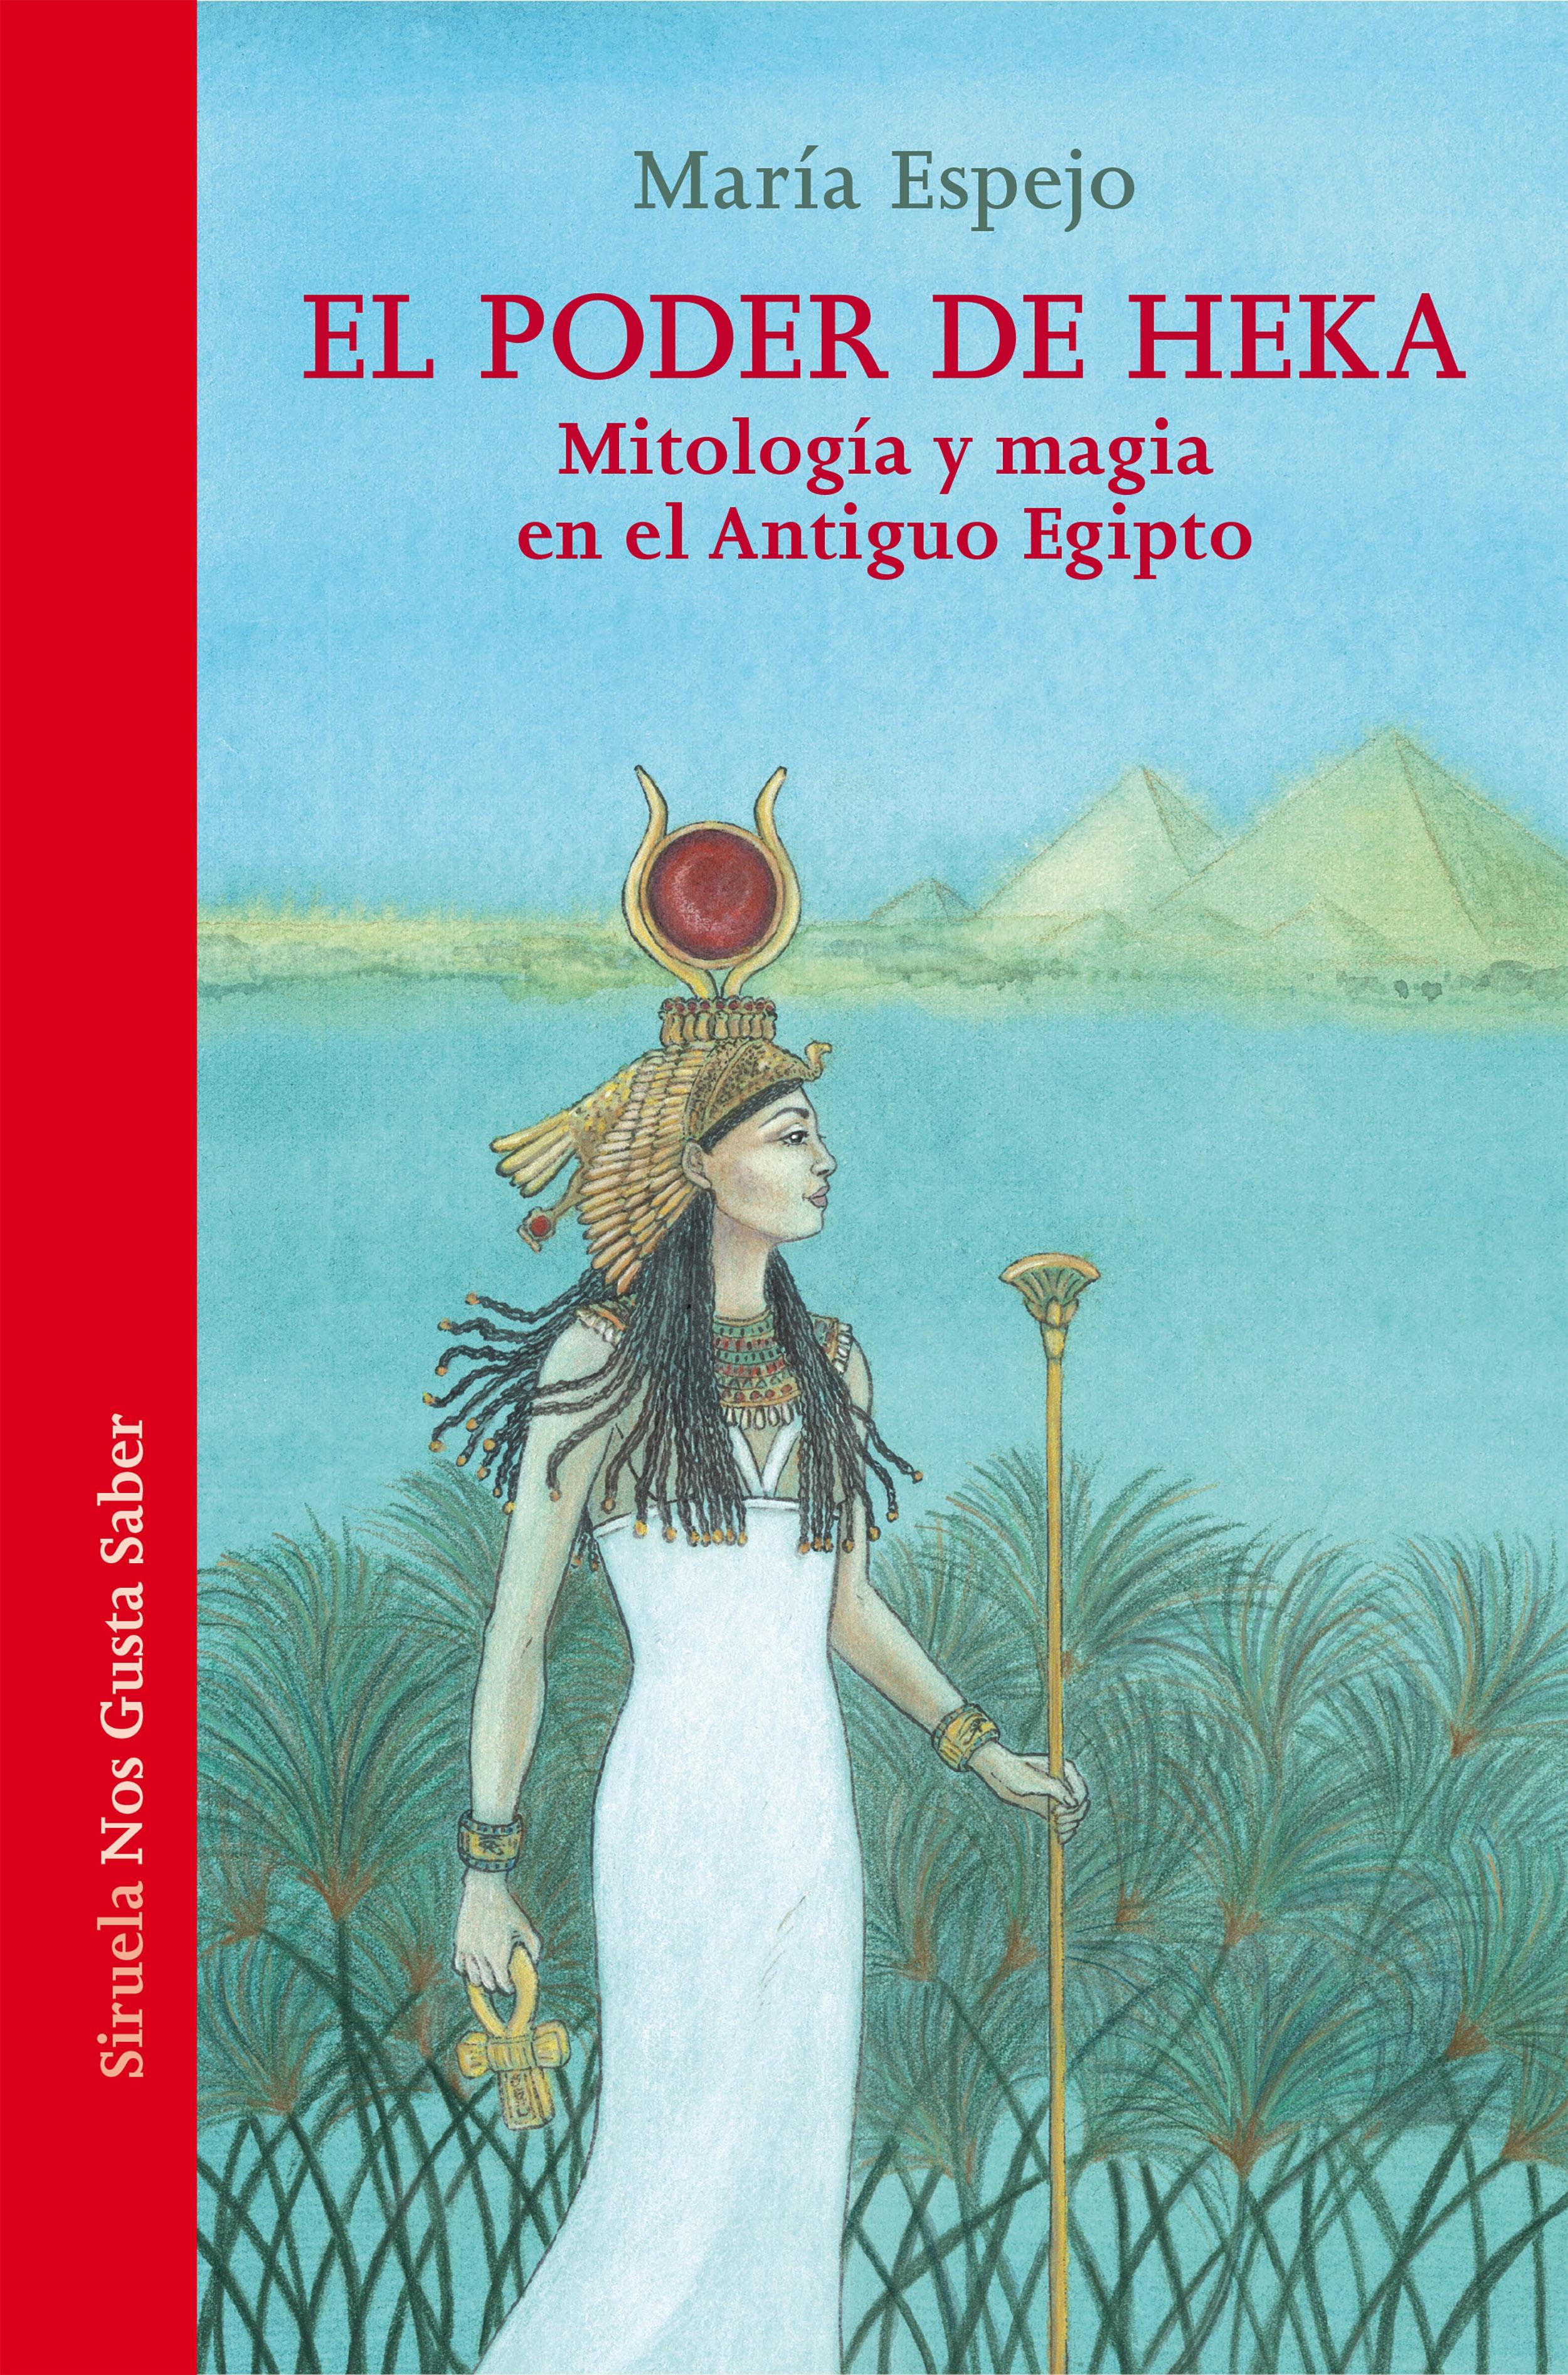 El poder de Heka "Mitología y magia en el Antiguo Egipto". 